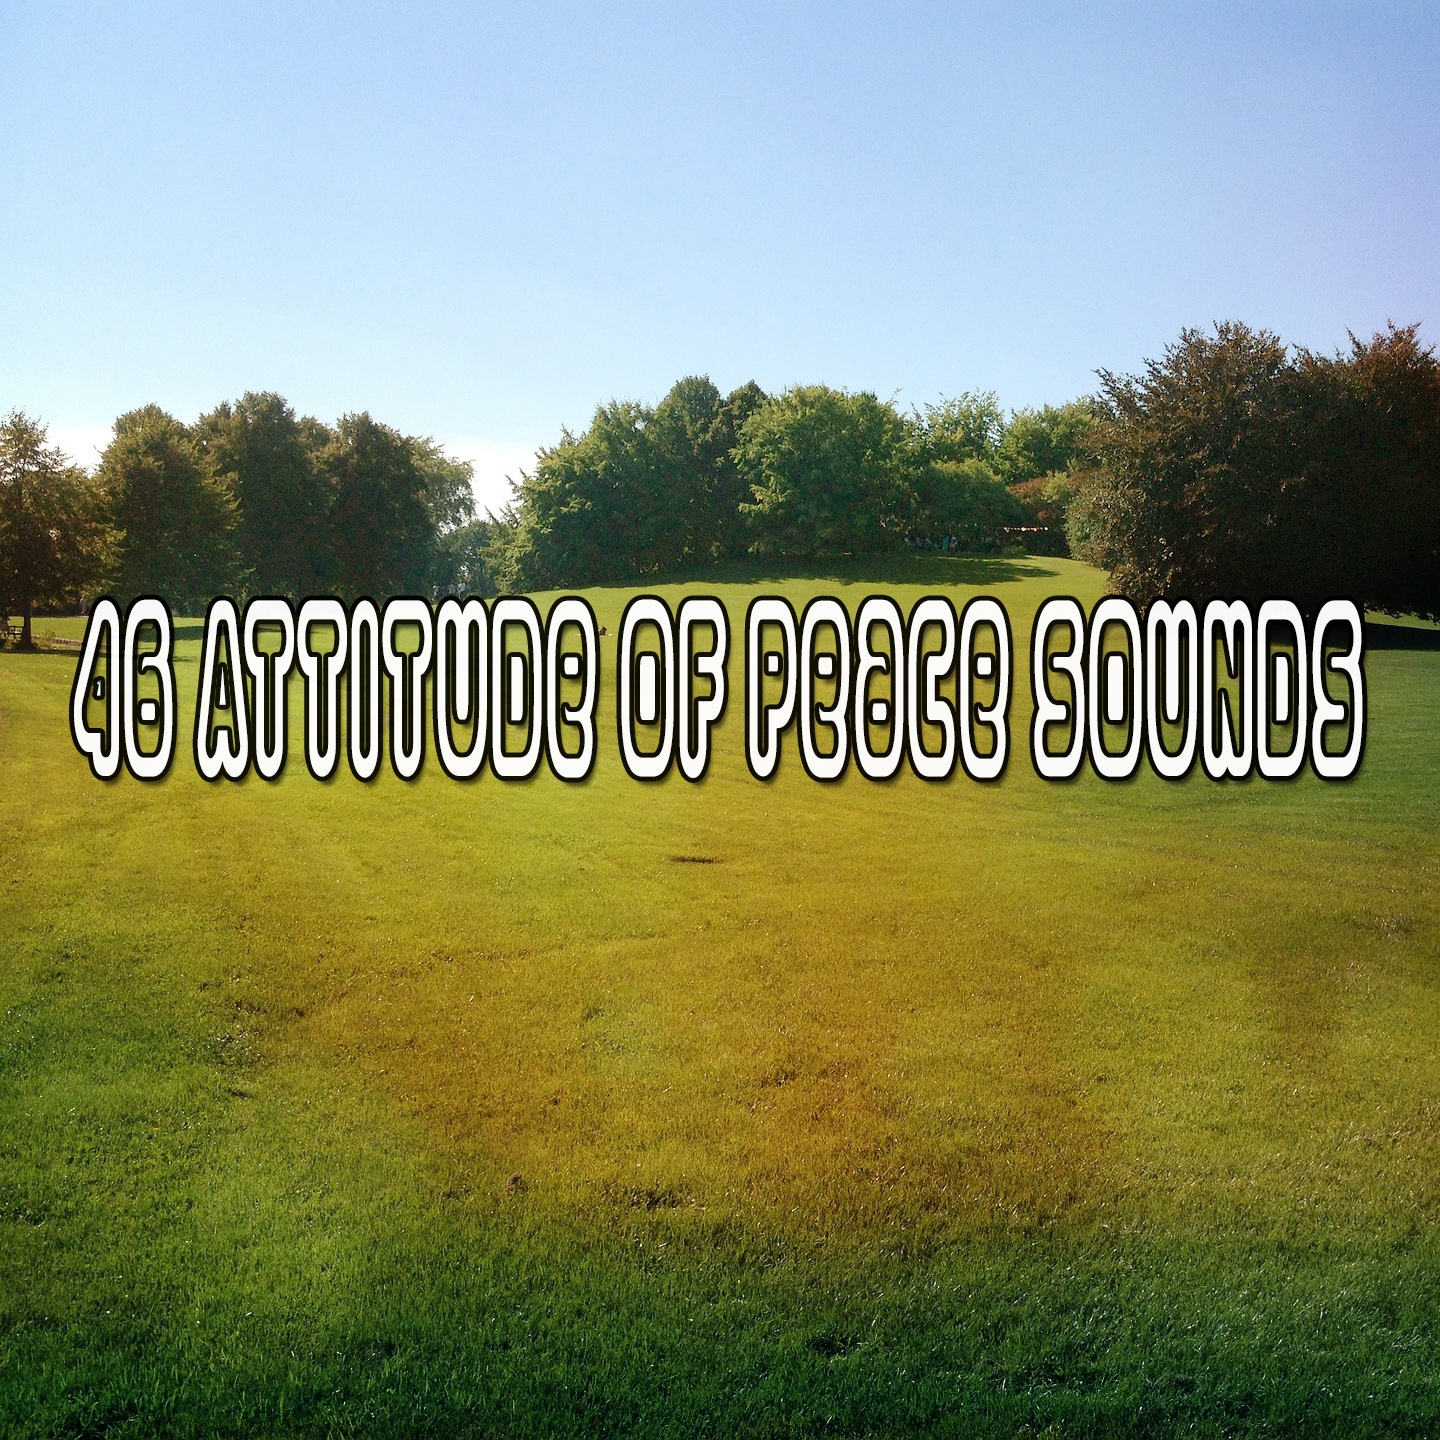 46 Attitude Of Peace Sounds